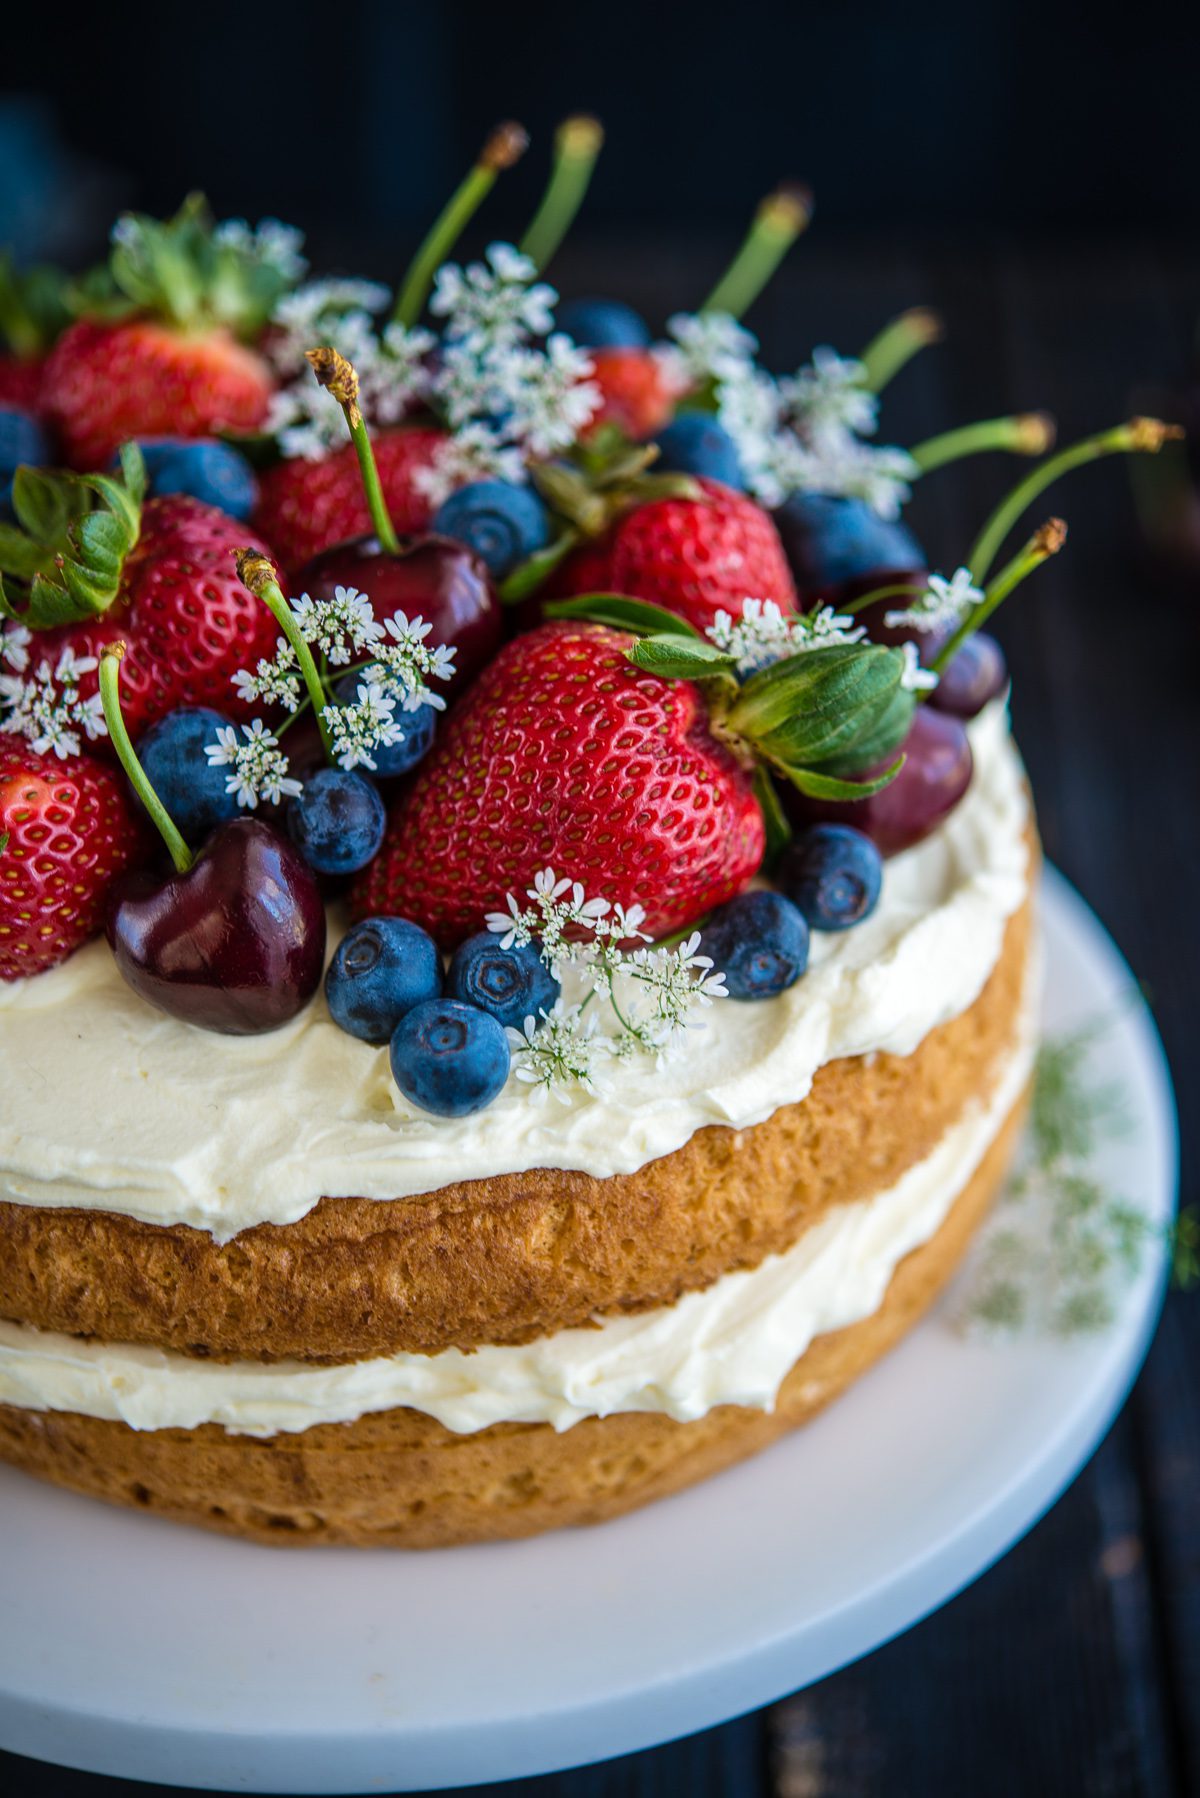 Ginger Sponge cake with fresh berries, Ginger Sponge cake with fresh berries